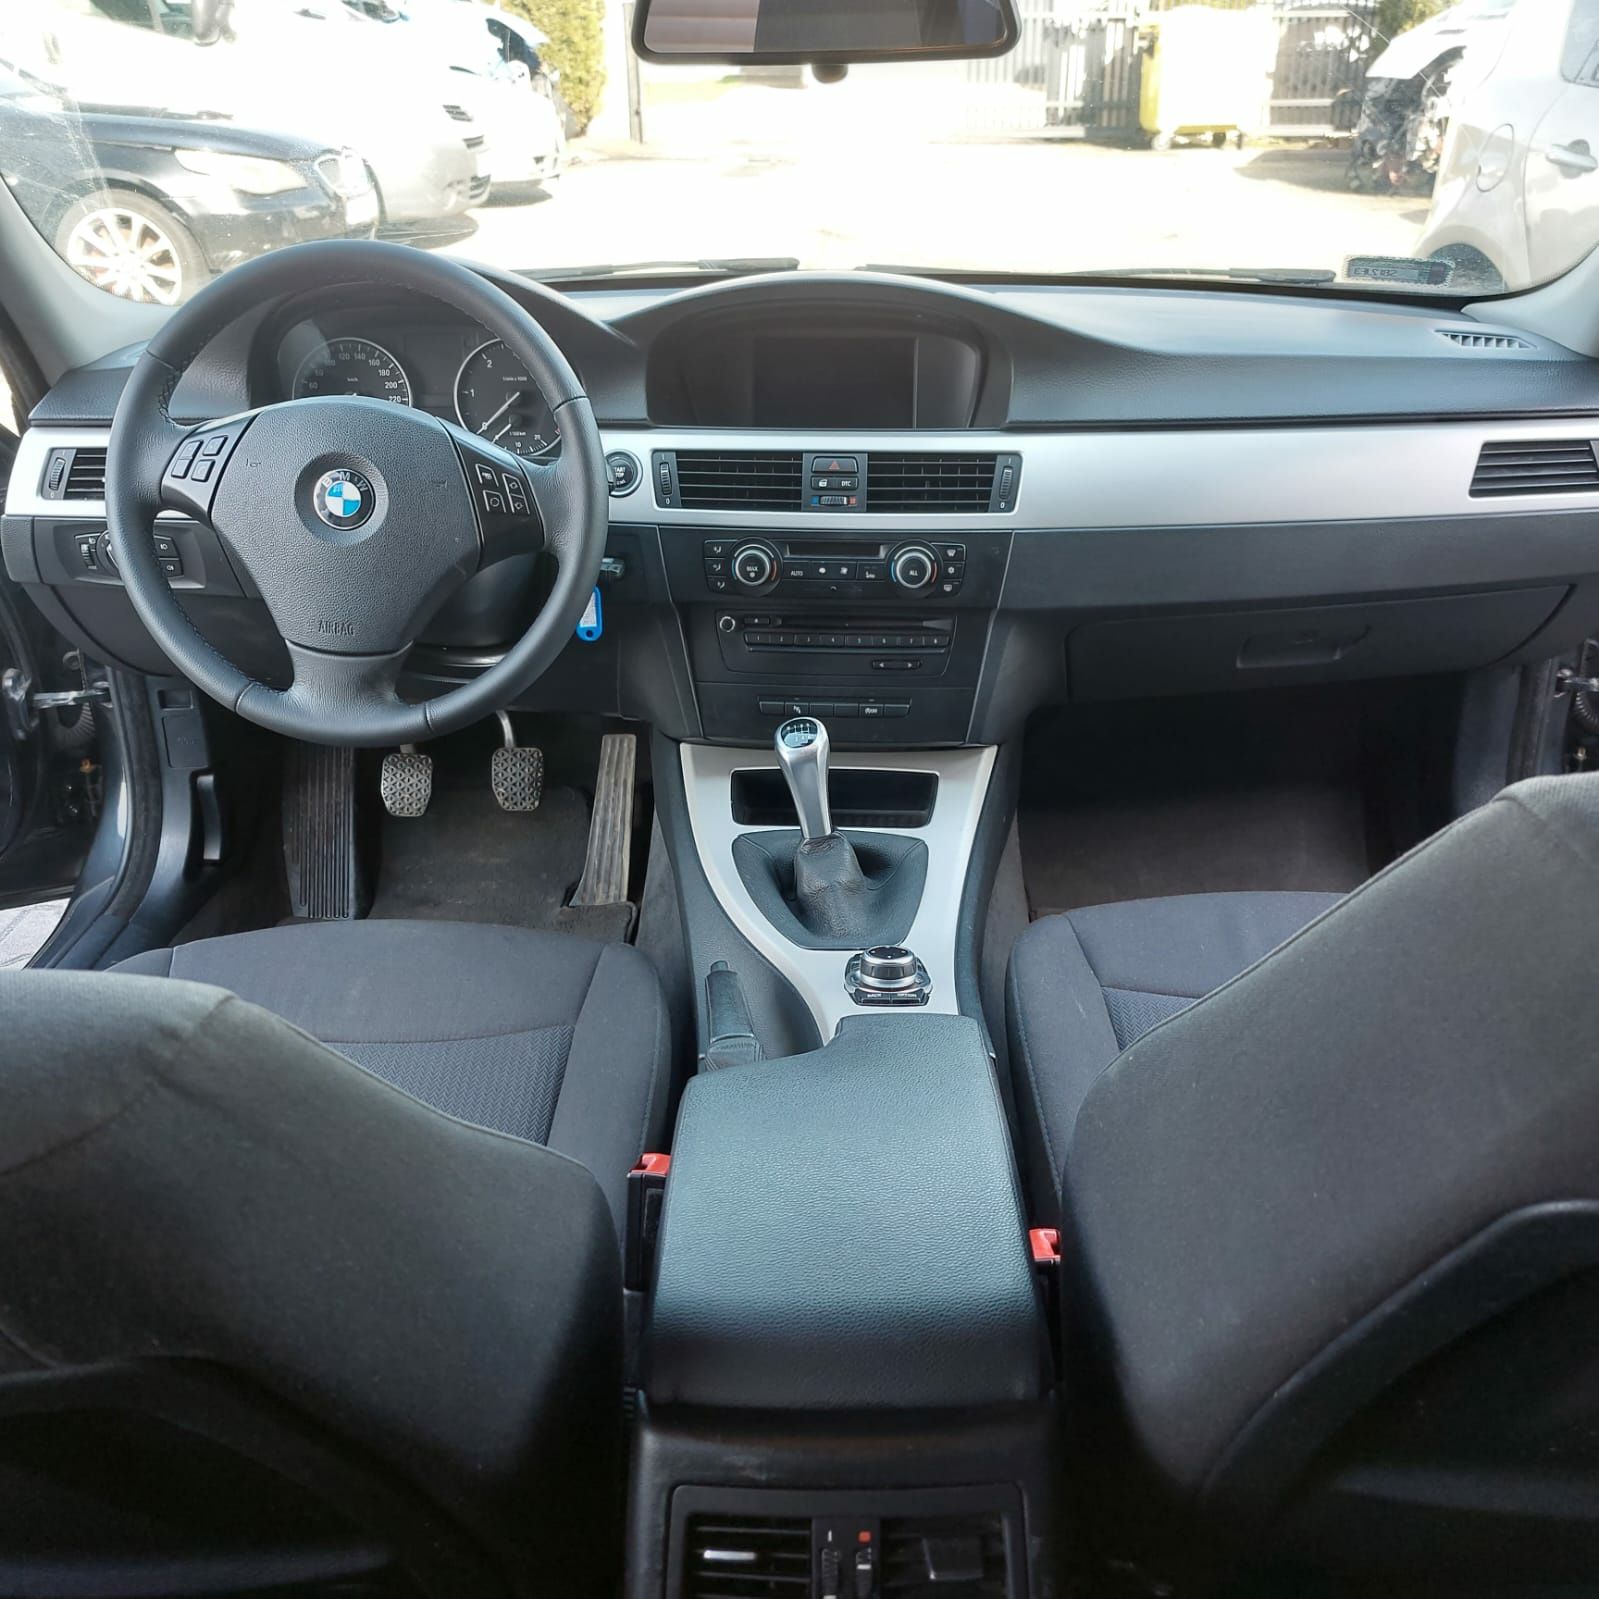 BMW E91 duża navi